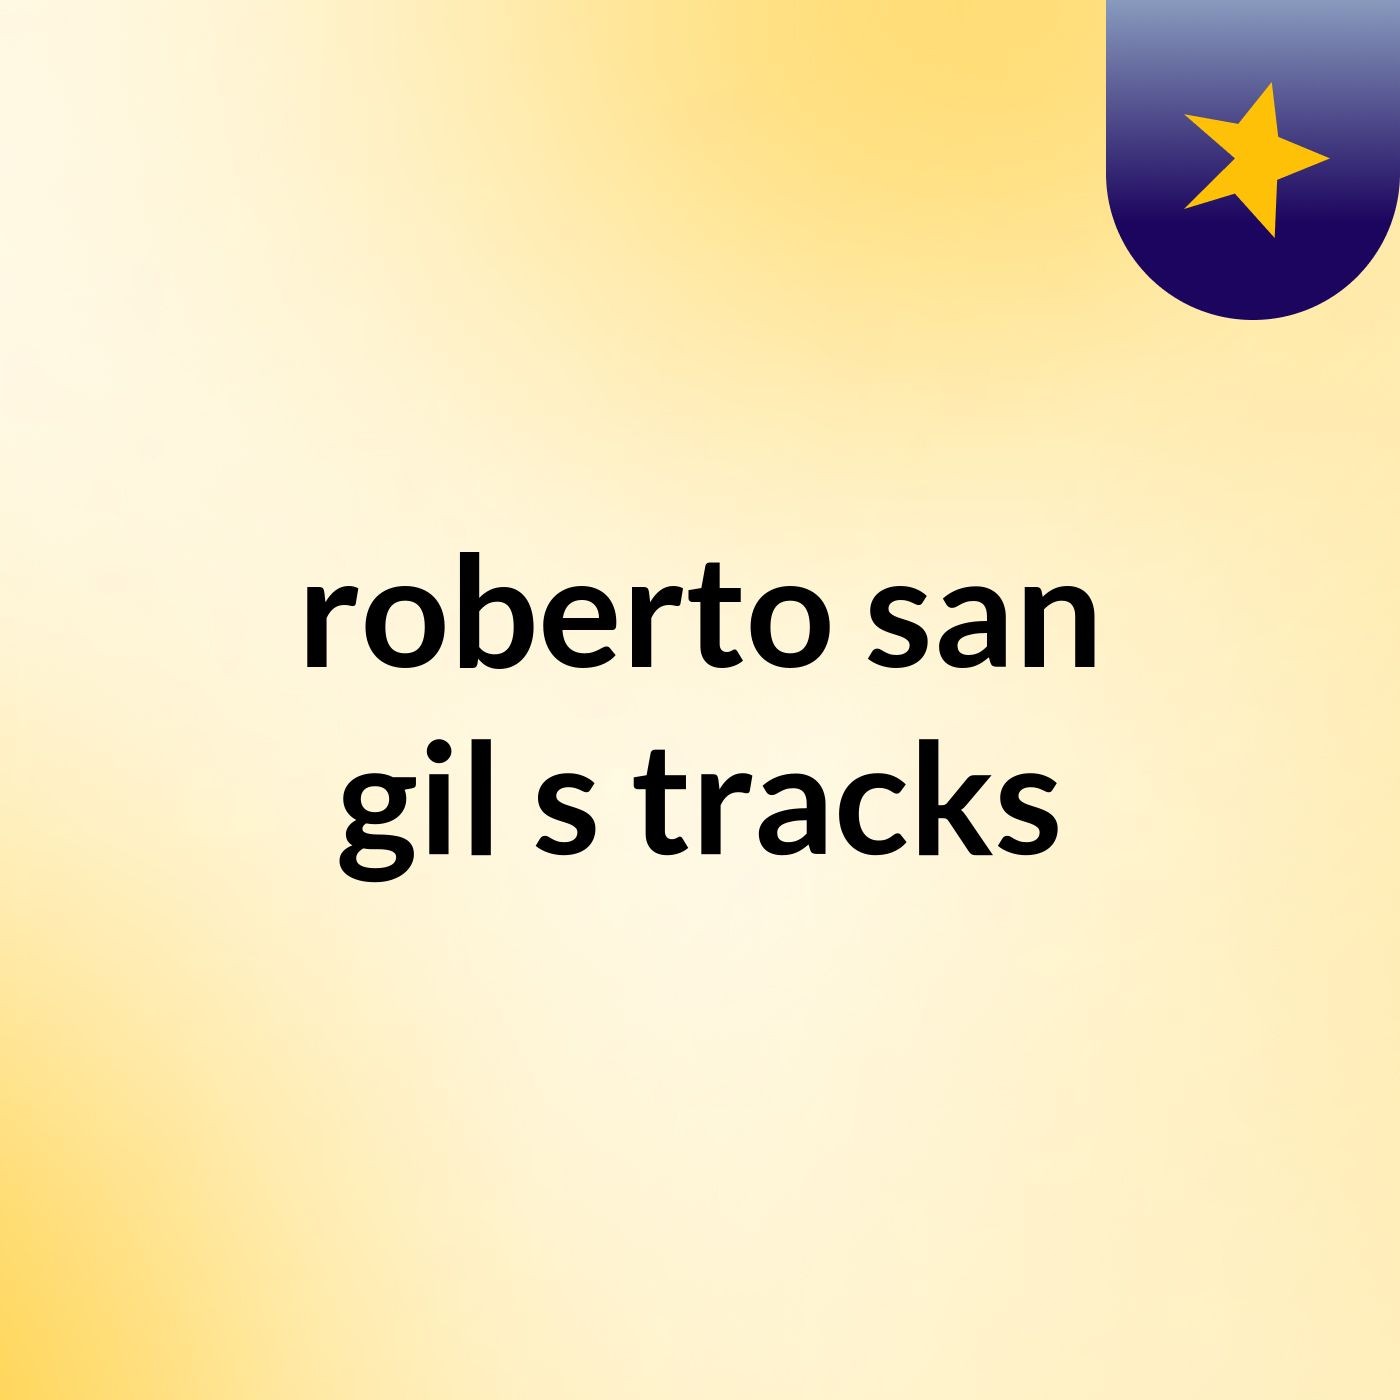 roberto san gil's tracks